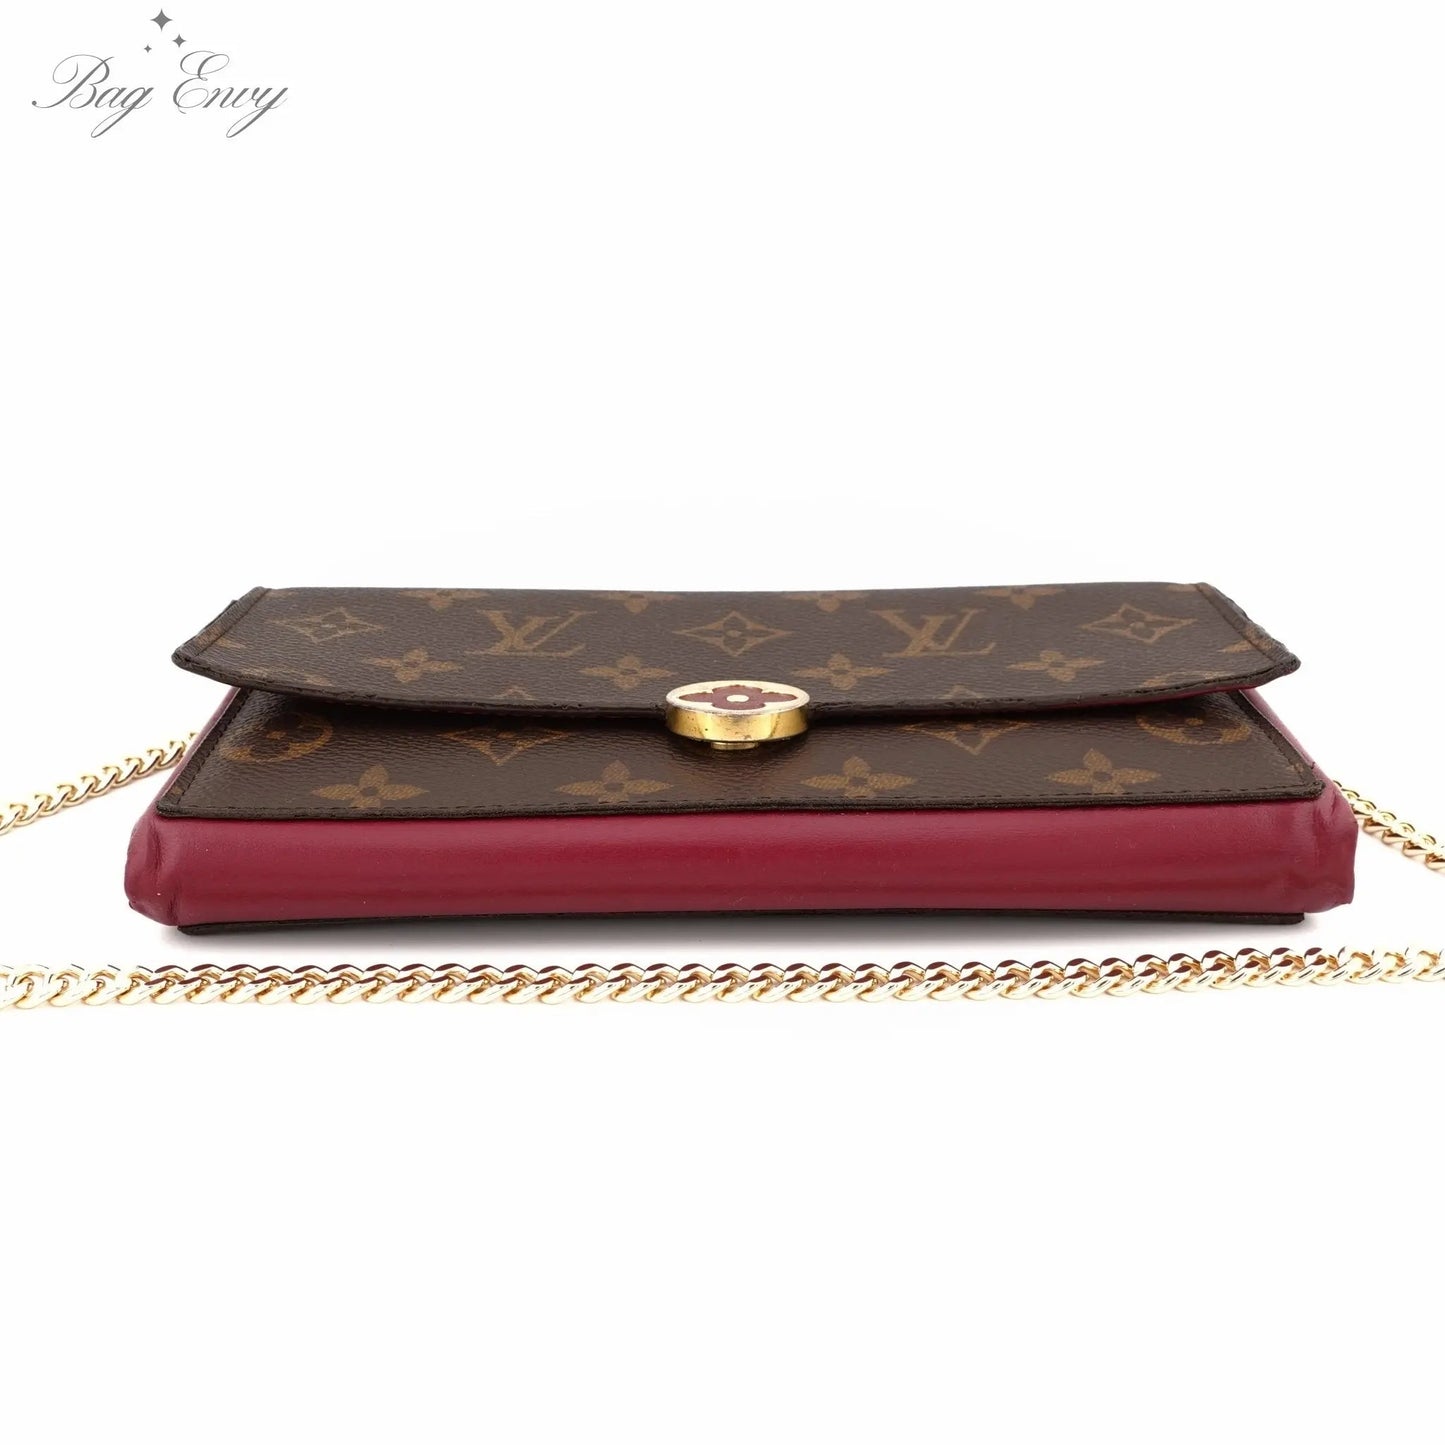 LOUIS VUITTON Monogram Flore Wallet On Chain - Bag Envy